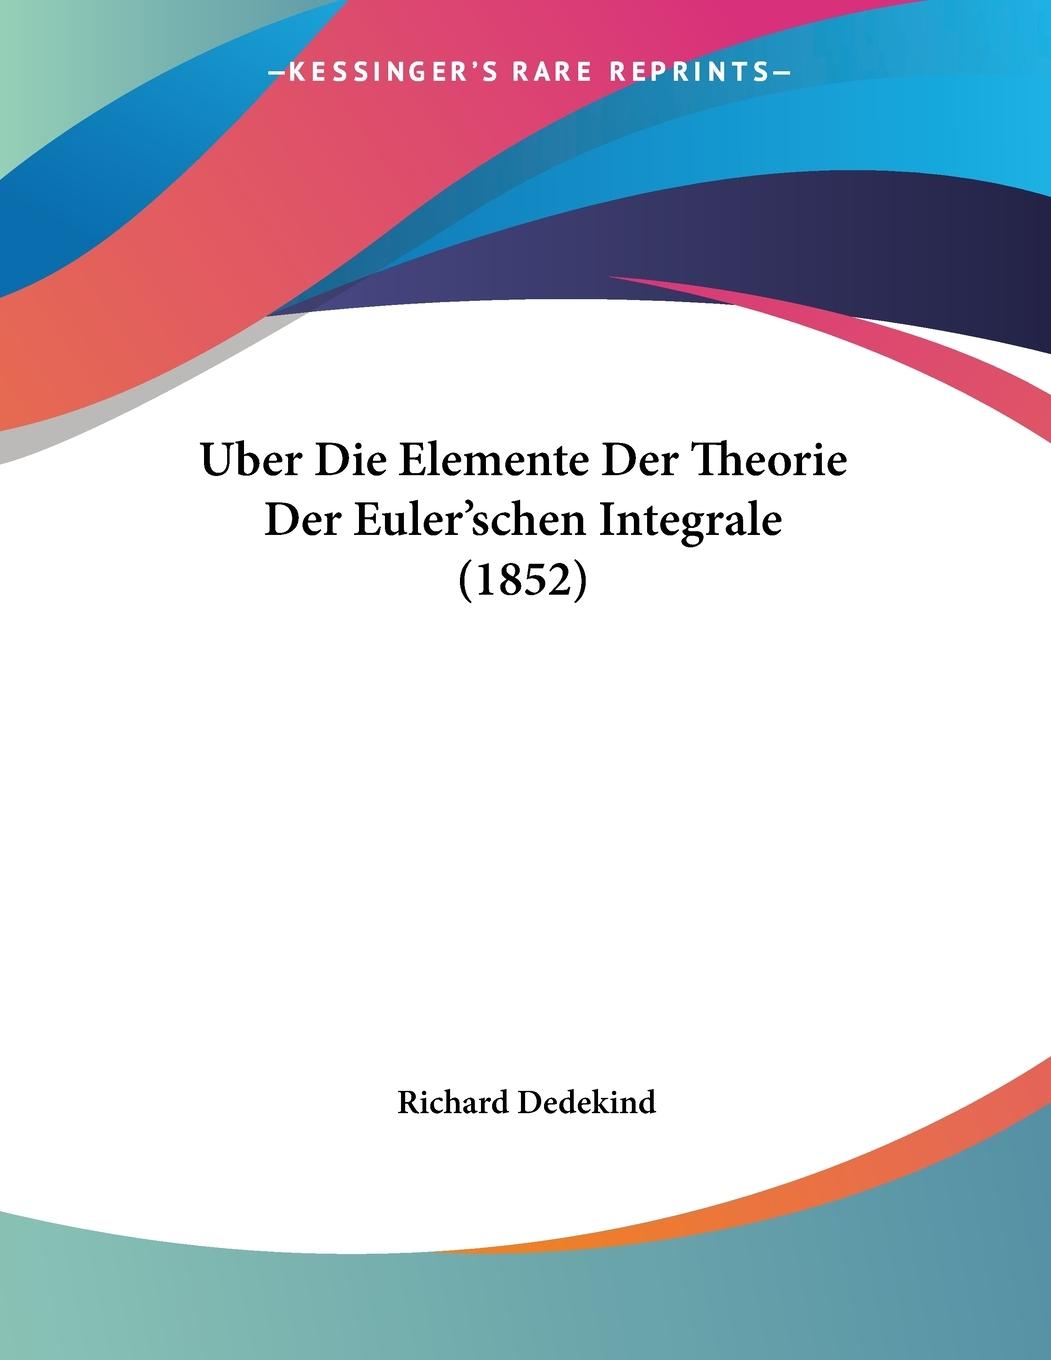 Uber Die Elemente Der Theorie Der Euler schen Integrale (1852) - Dedekind, Richard